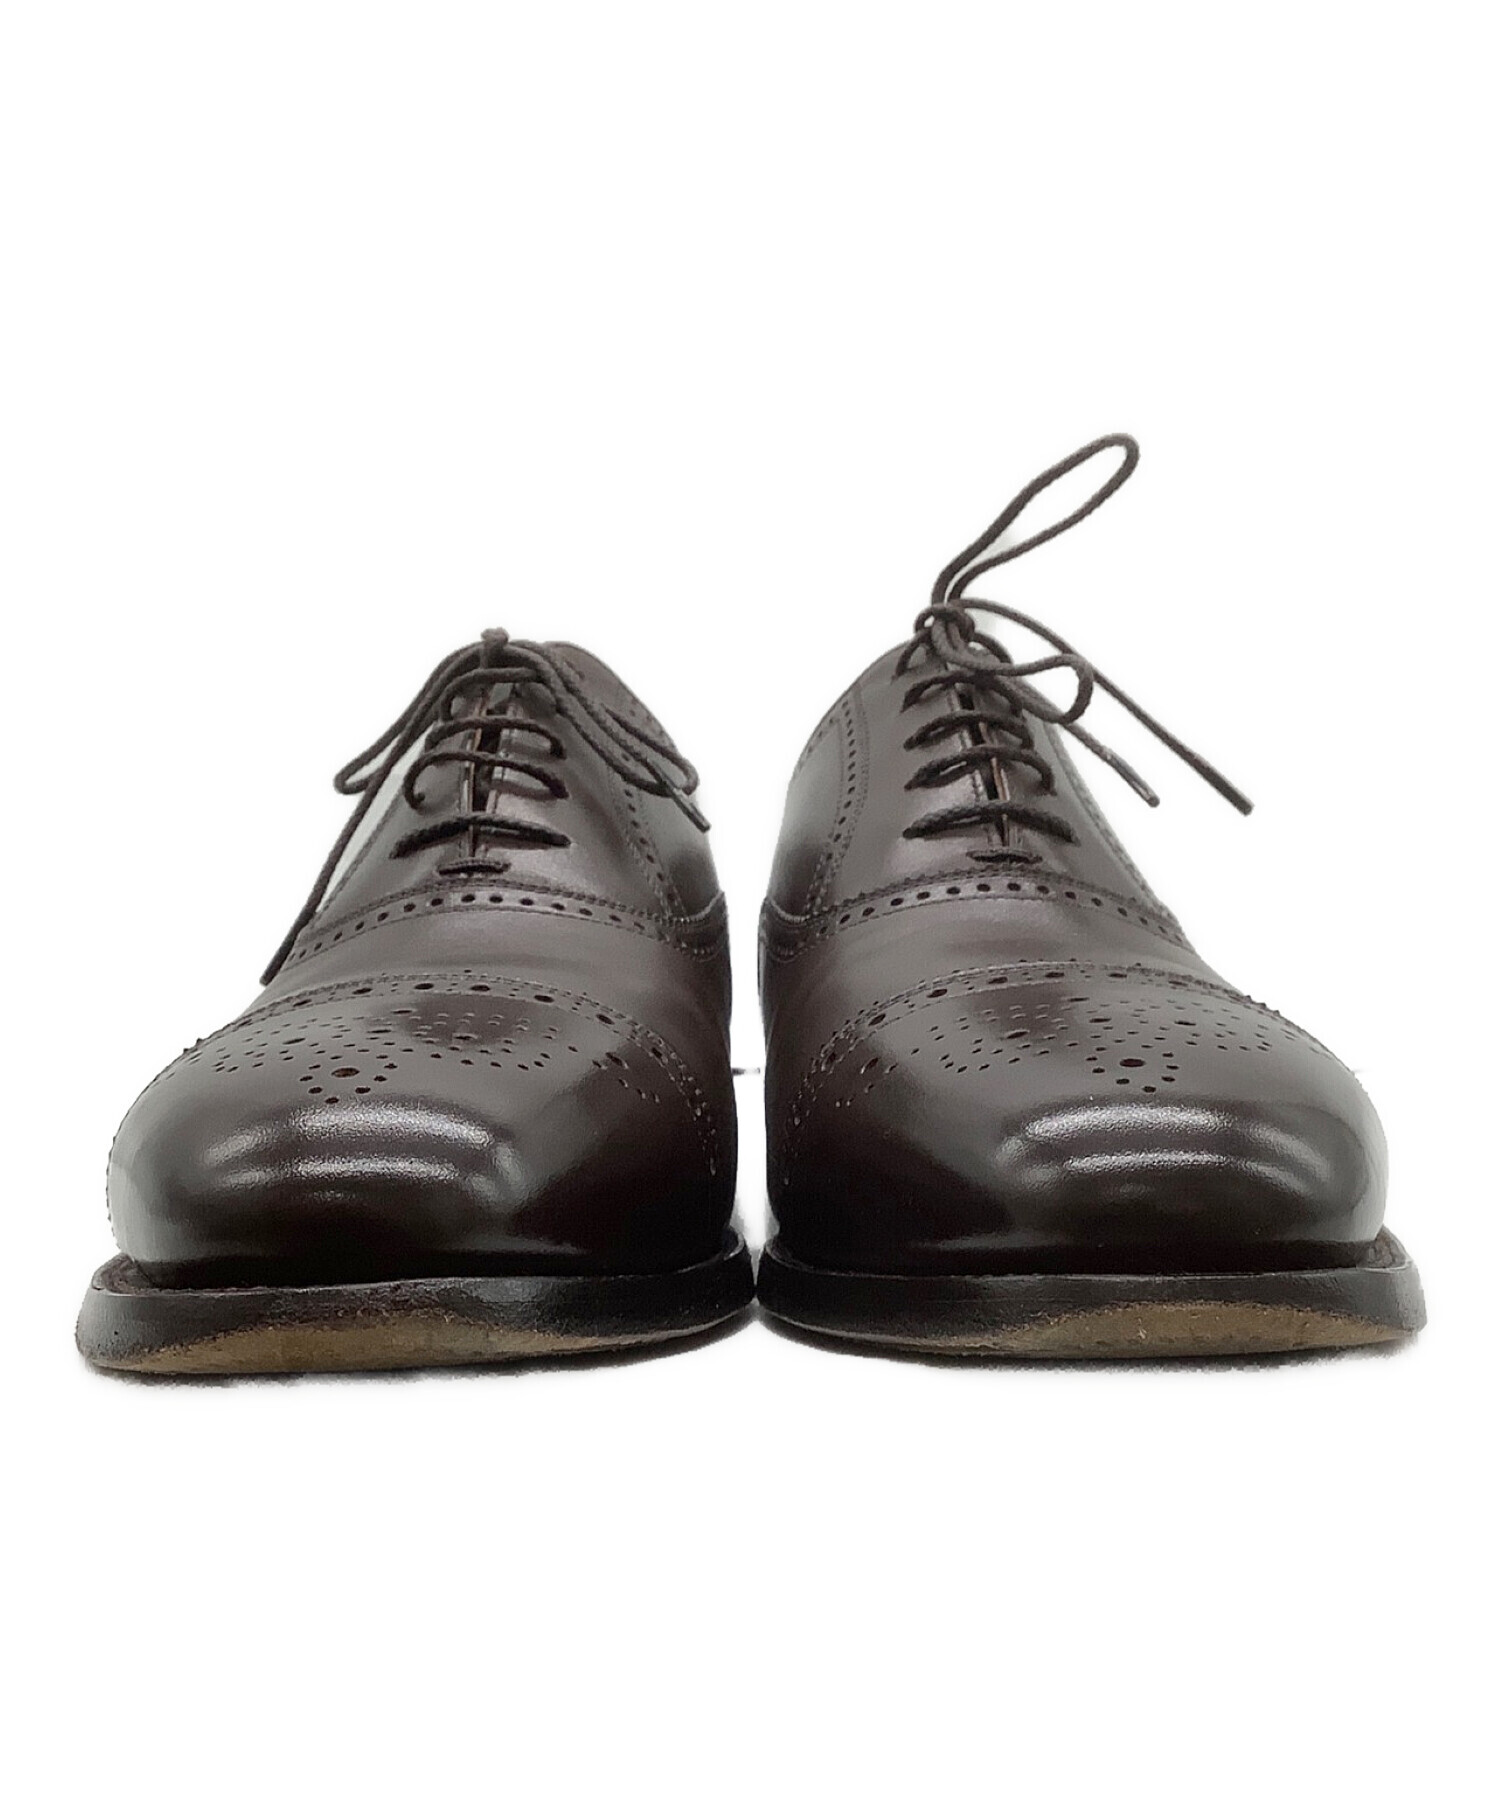 ◎50周年記念モデル SCOTCH GRAIN スコッチグレイン 革靴 - 靴